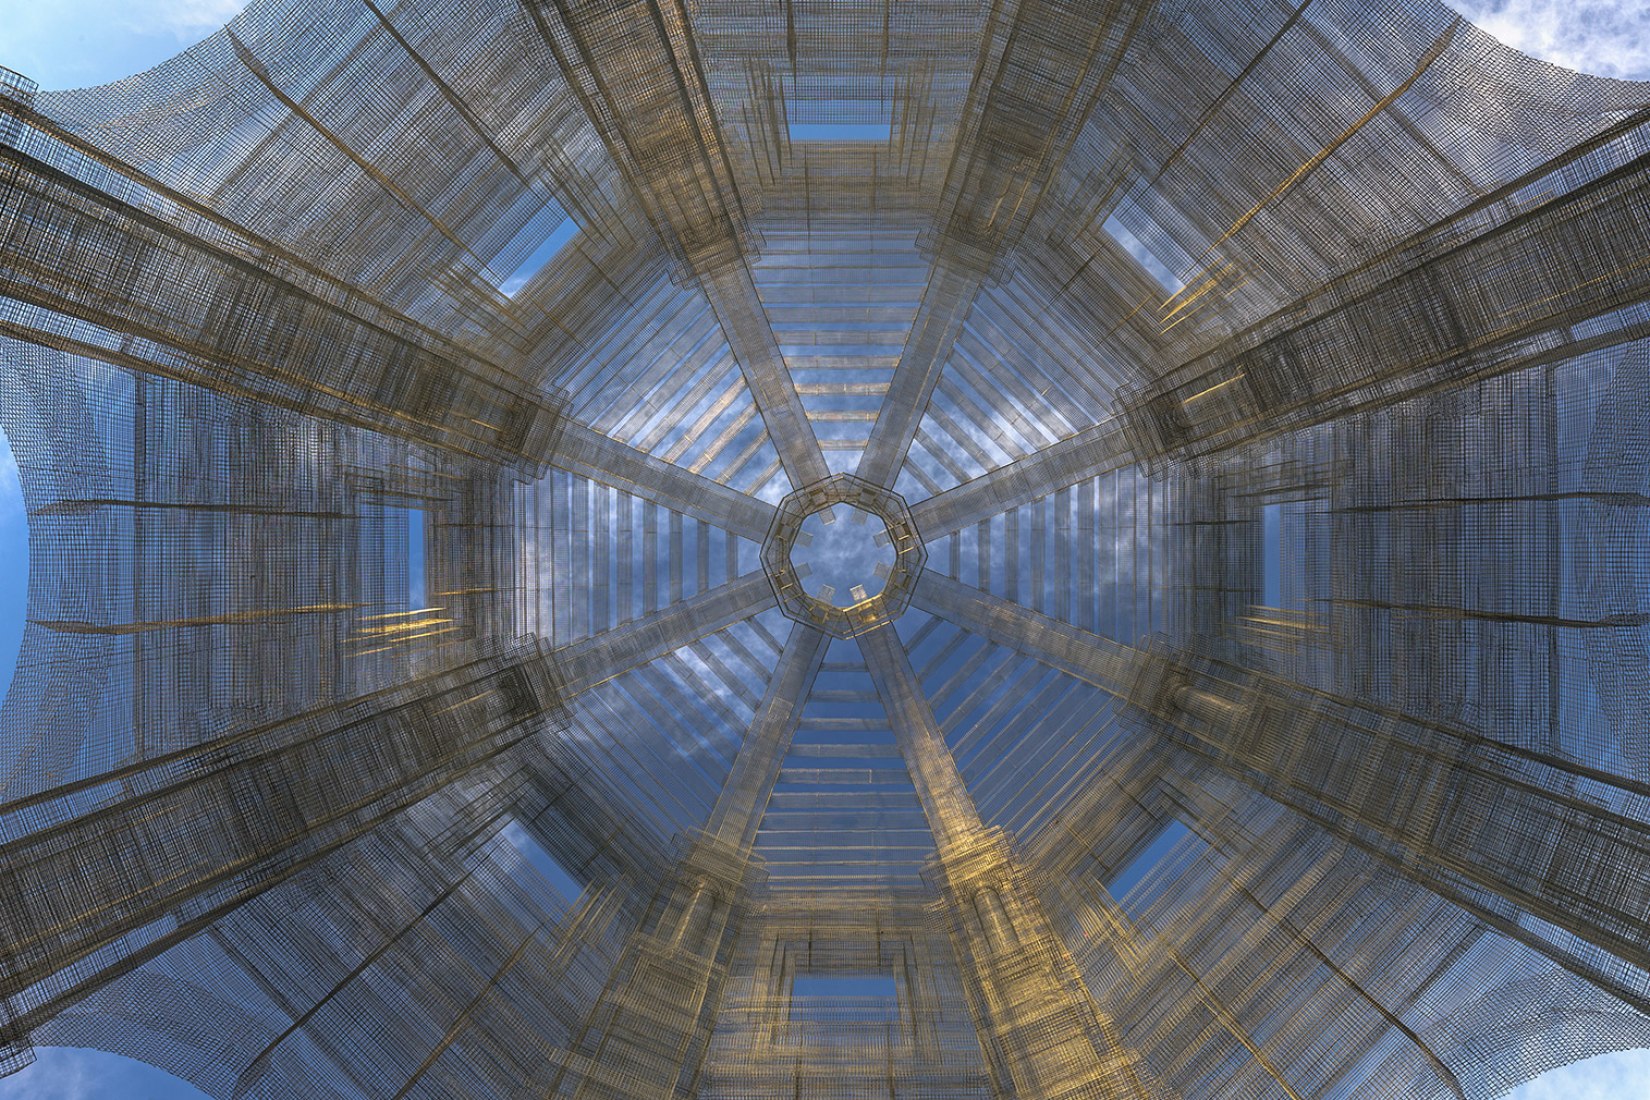 Dome view. Etherea by Edoardo Tresoldi. Photograph @ Roberto Conte 